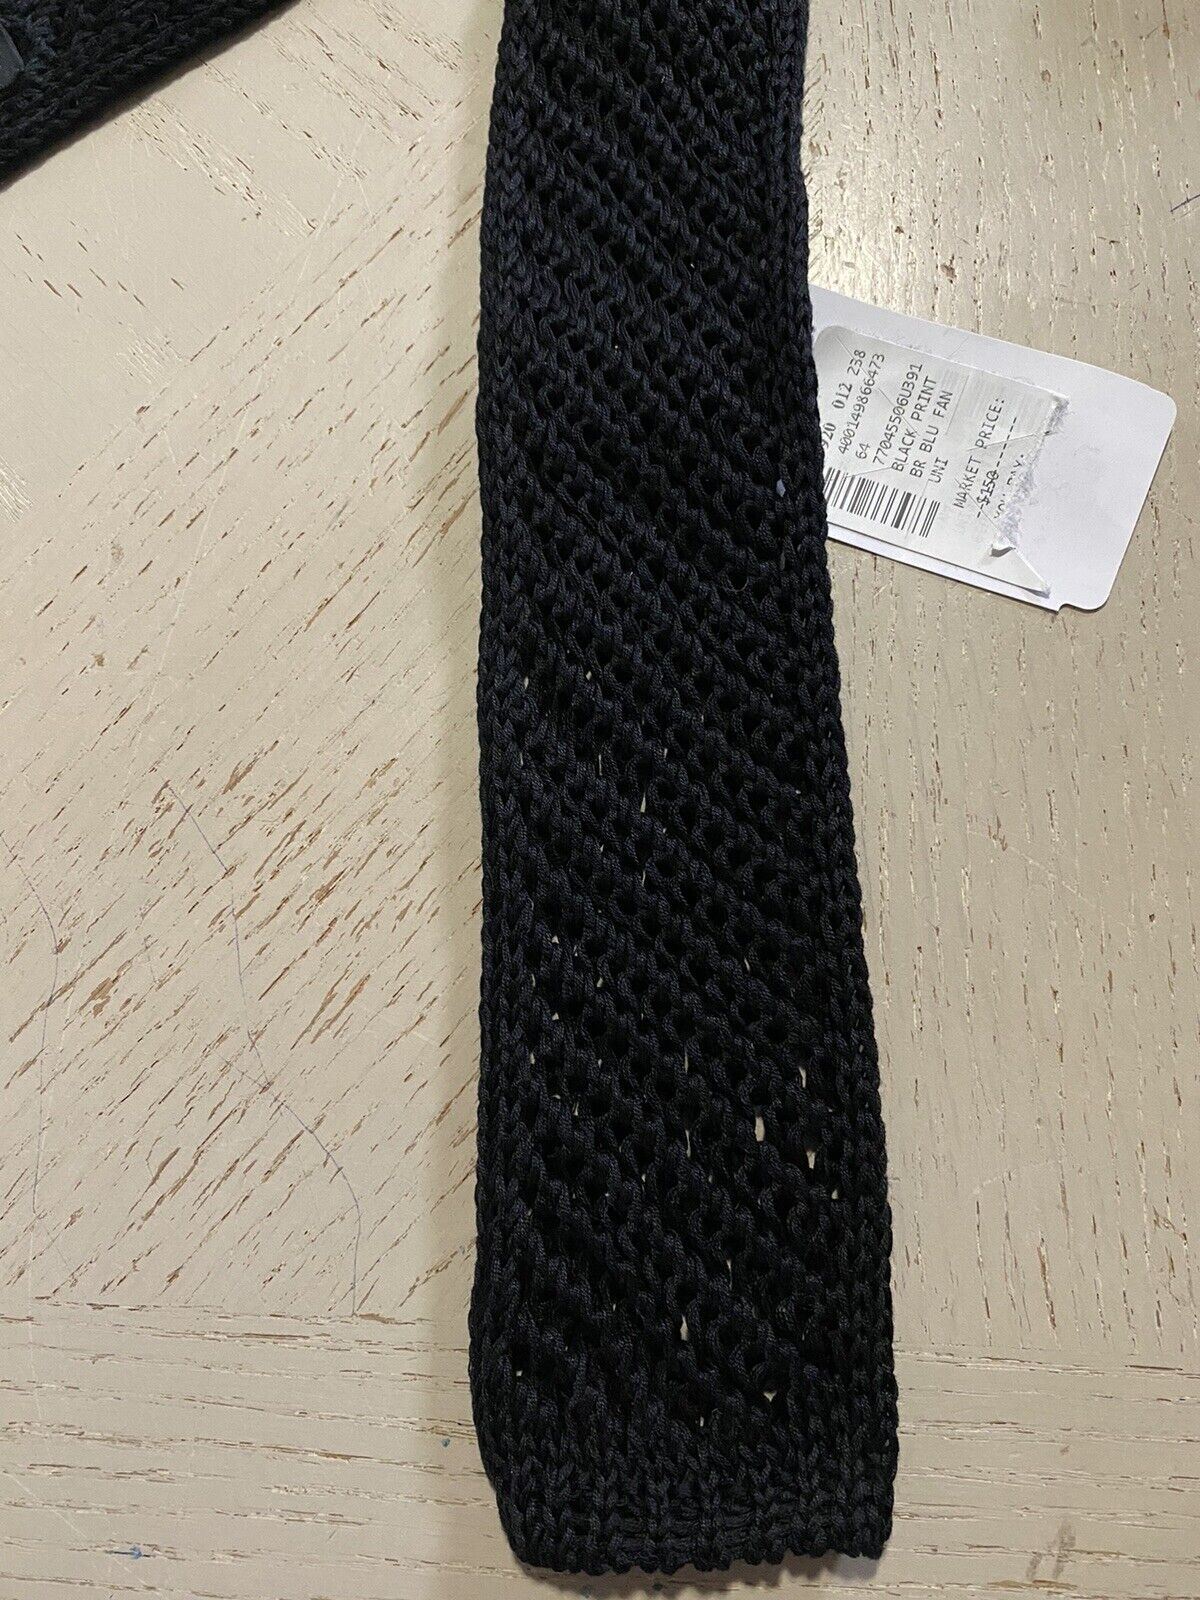 Новый текстурированный галстук Corneliani, черный, Италия